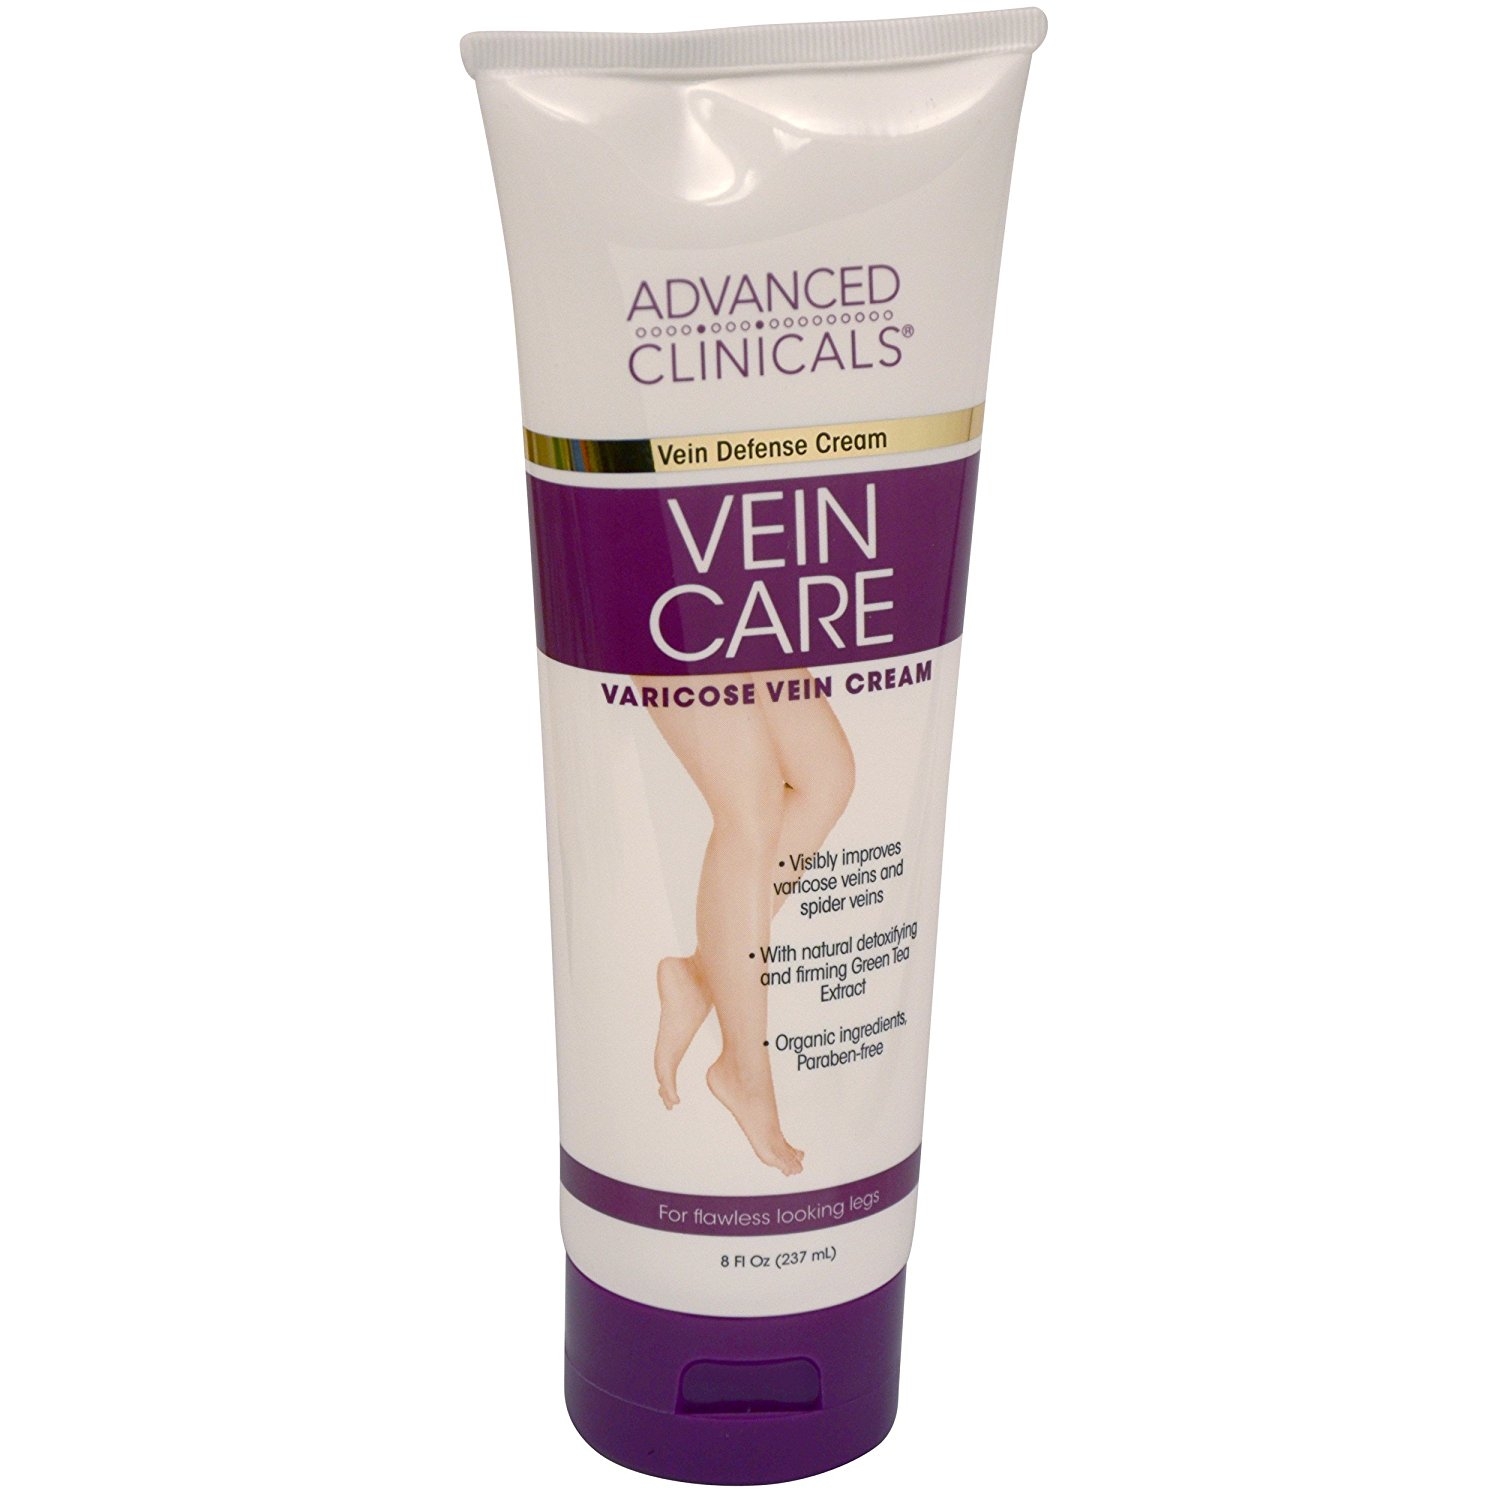 Vein Care Cream ngăn ngừa và đẩy lùi giãn tĩnh mạch chân